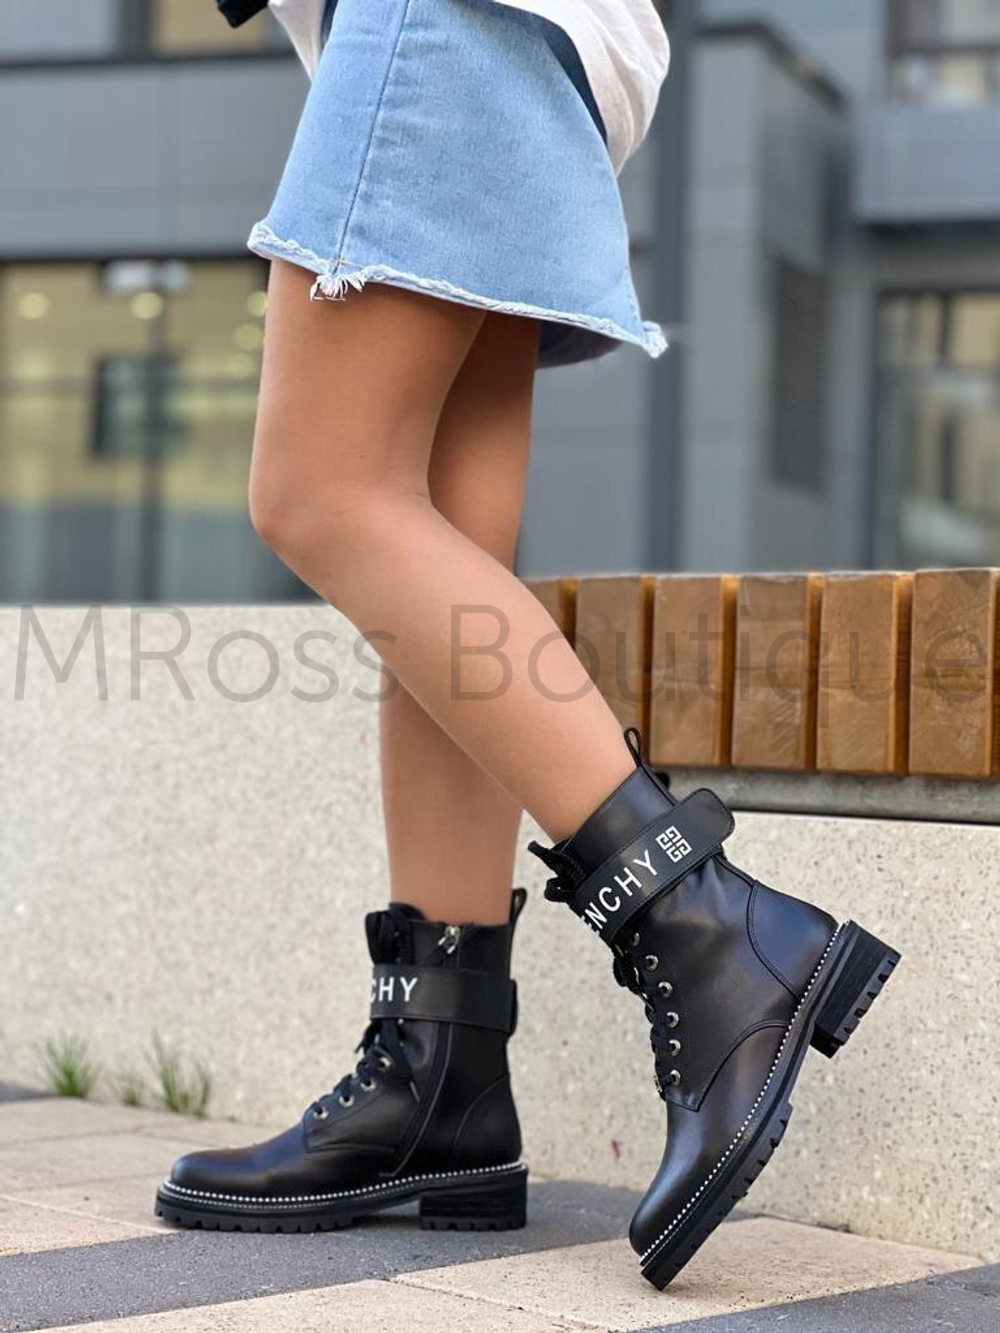 Женские демисезонные ботинки Givenchy Живанши люкс класса